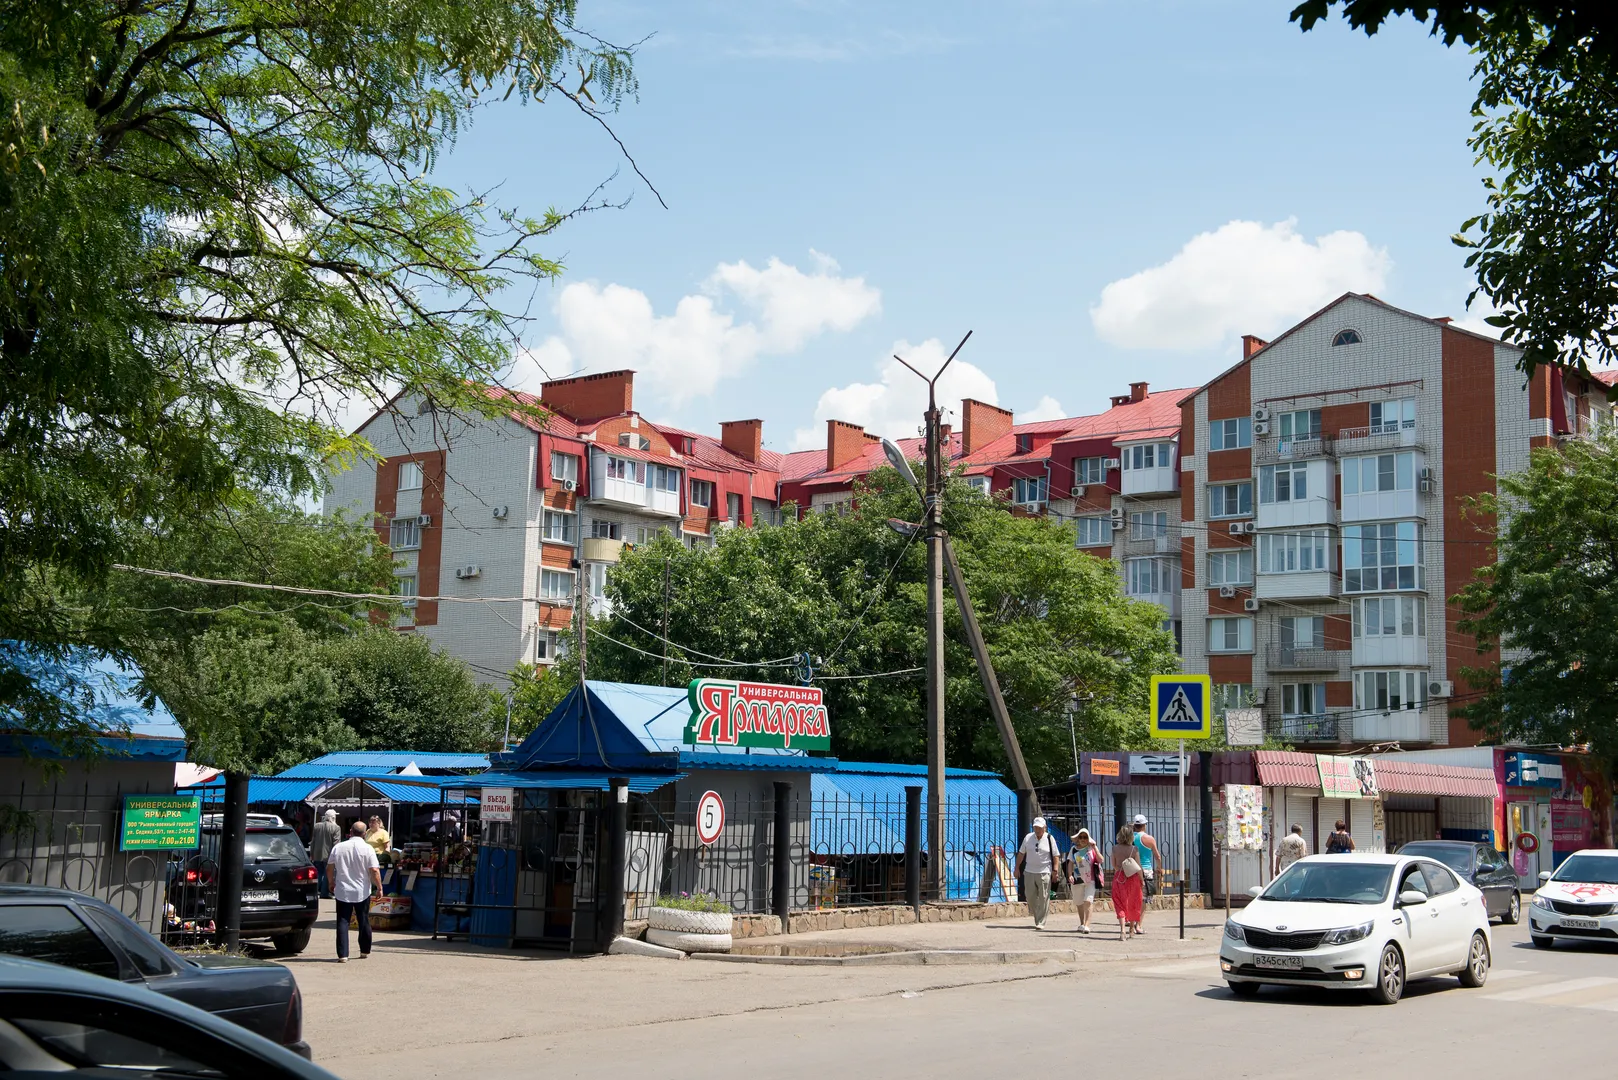 Общий вид улицы: под боком рынок военного городка со свежими фруктами, остановка и магазины, все рядом